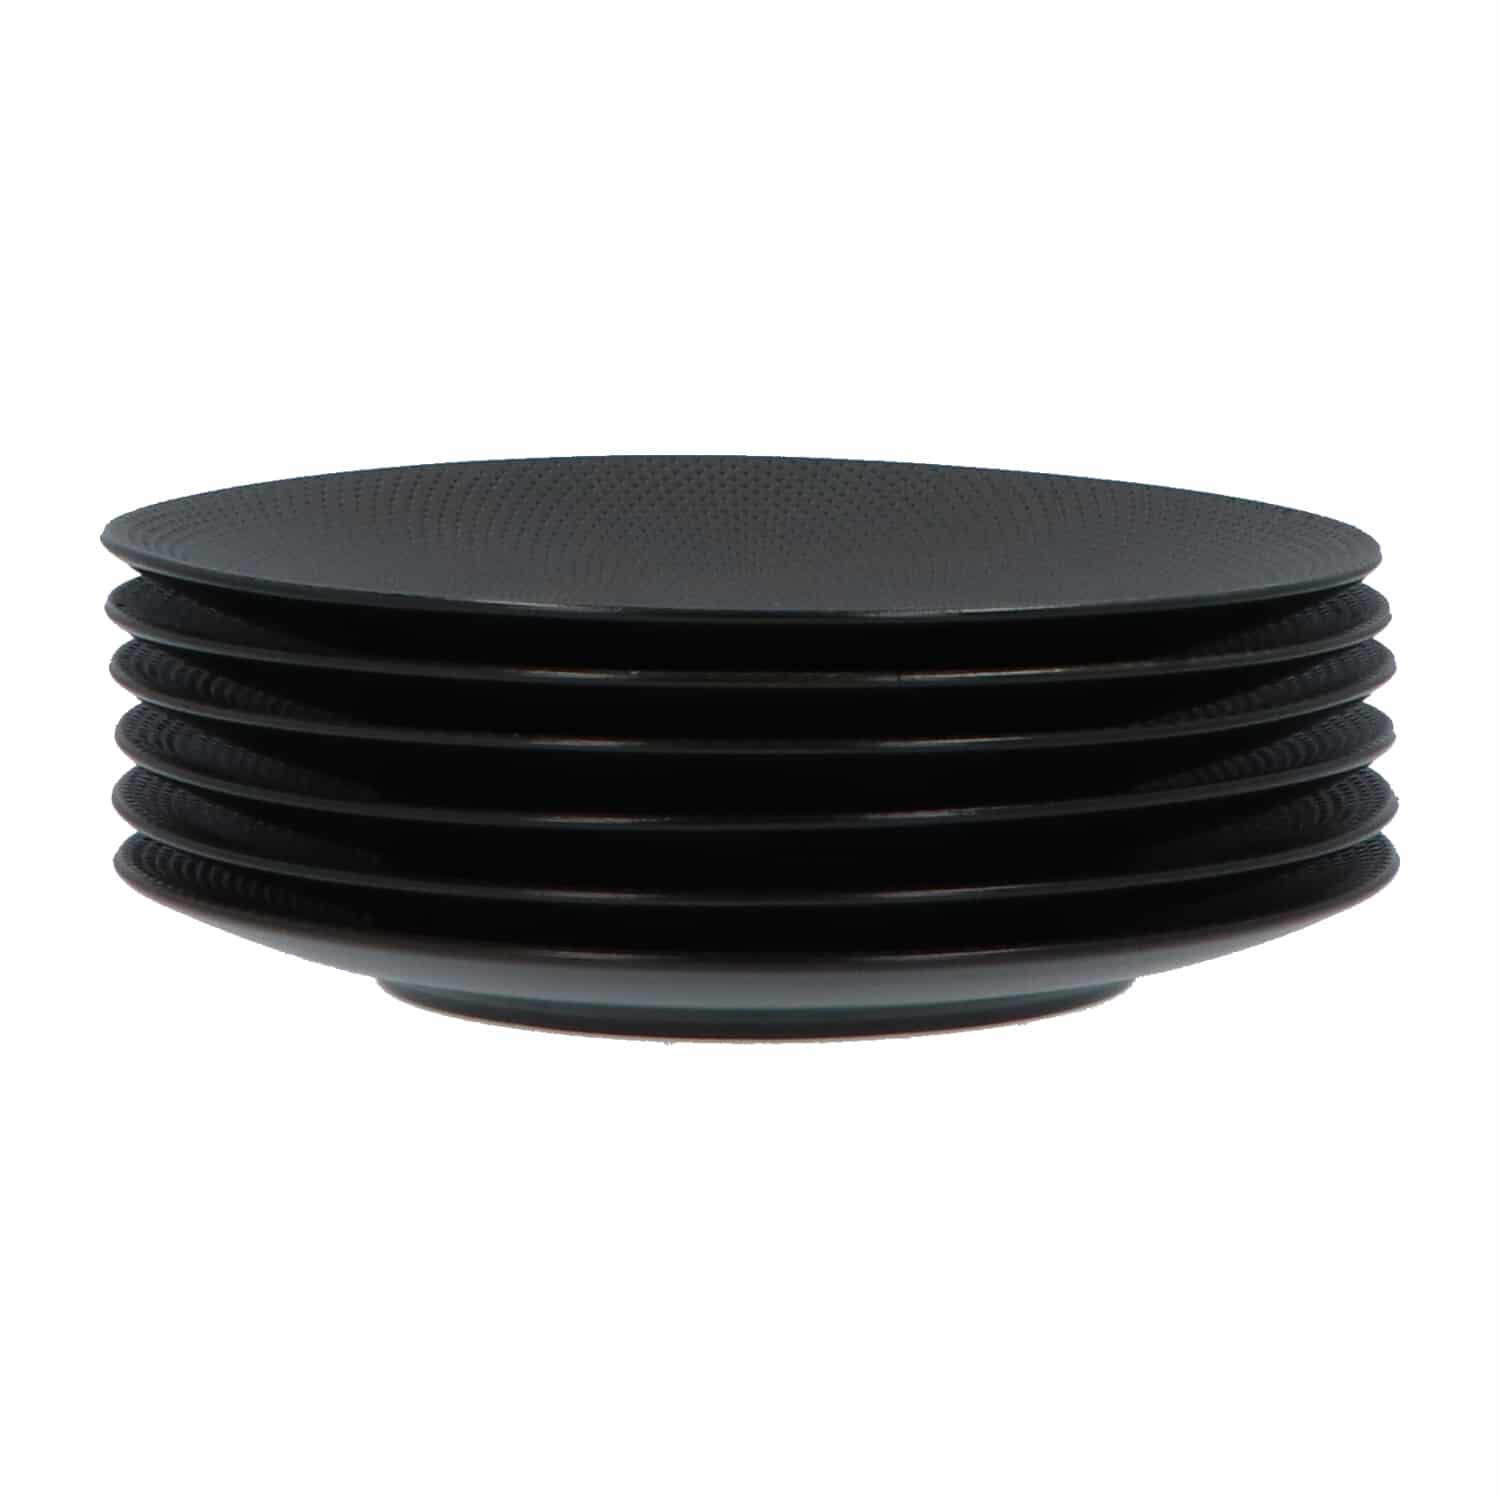 4goodz Porseleinen Ontbijt/Dessert Borden Caviar 6 stuks 21 cm - Zwart